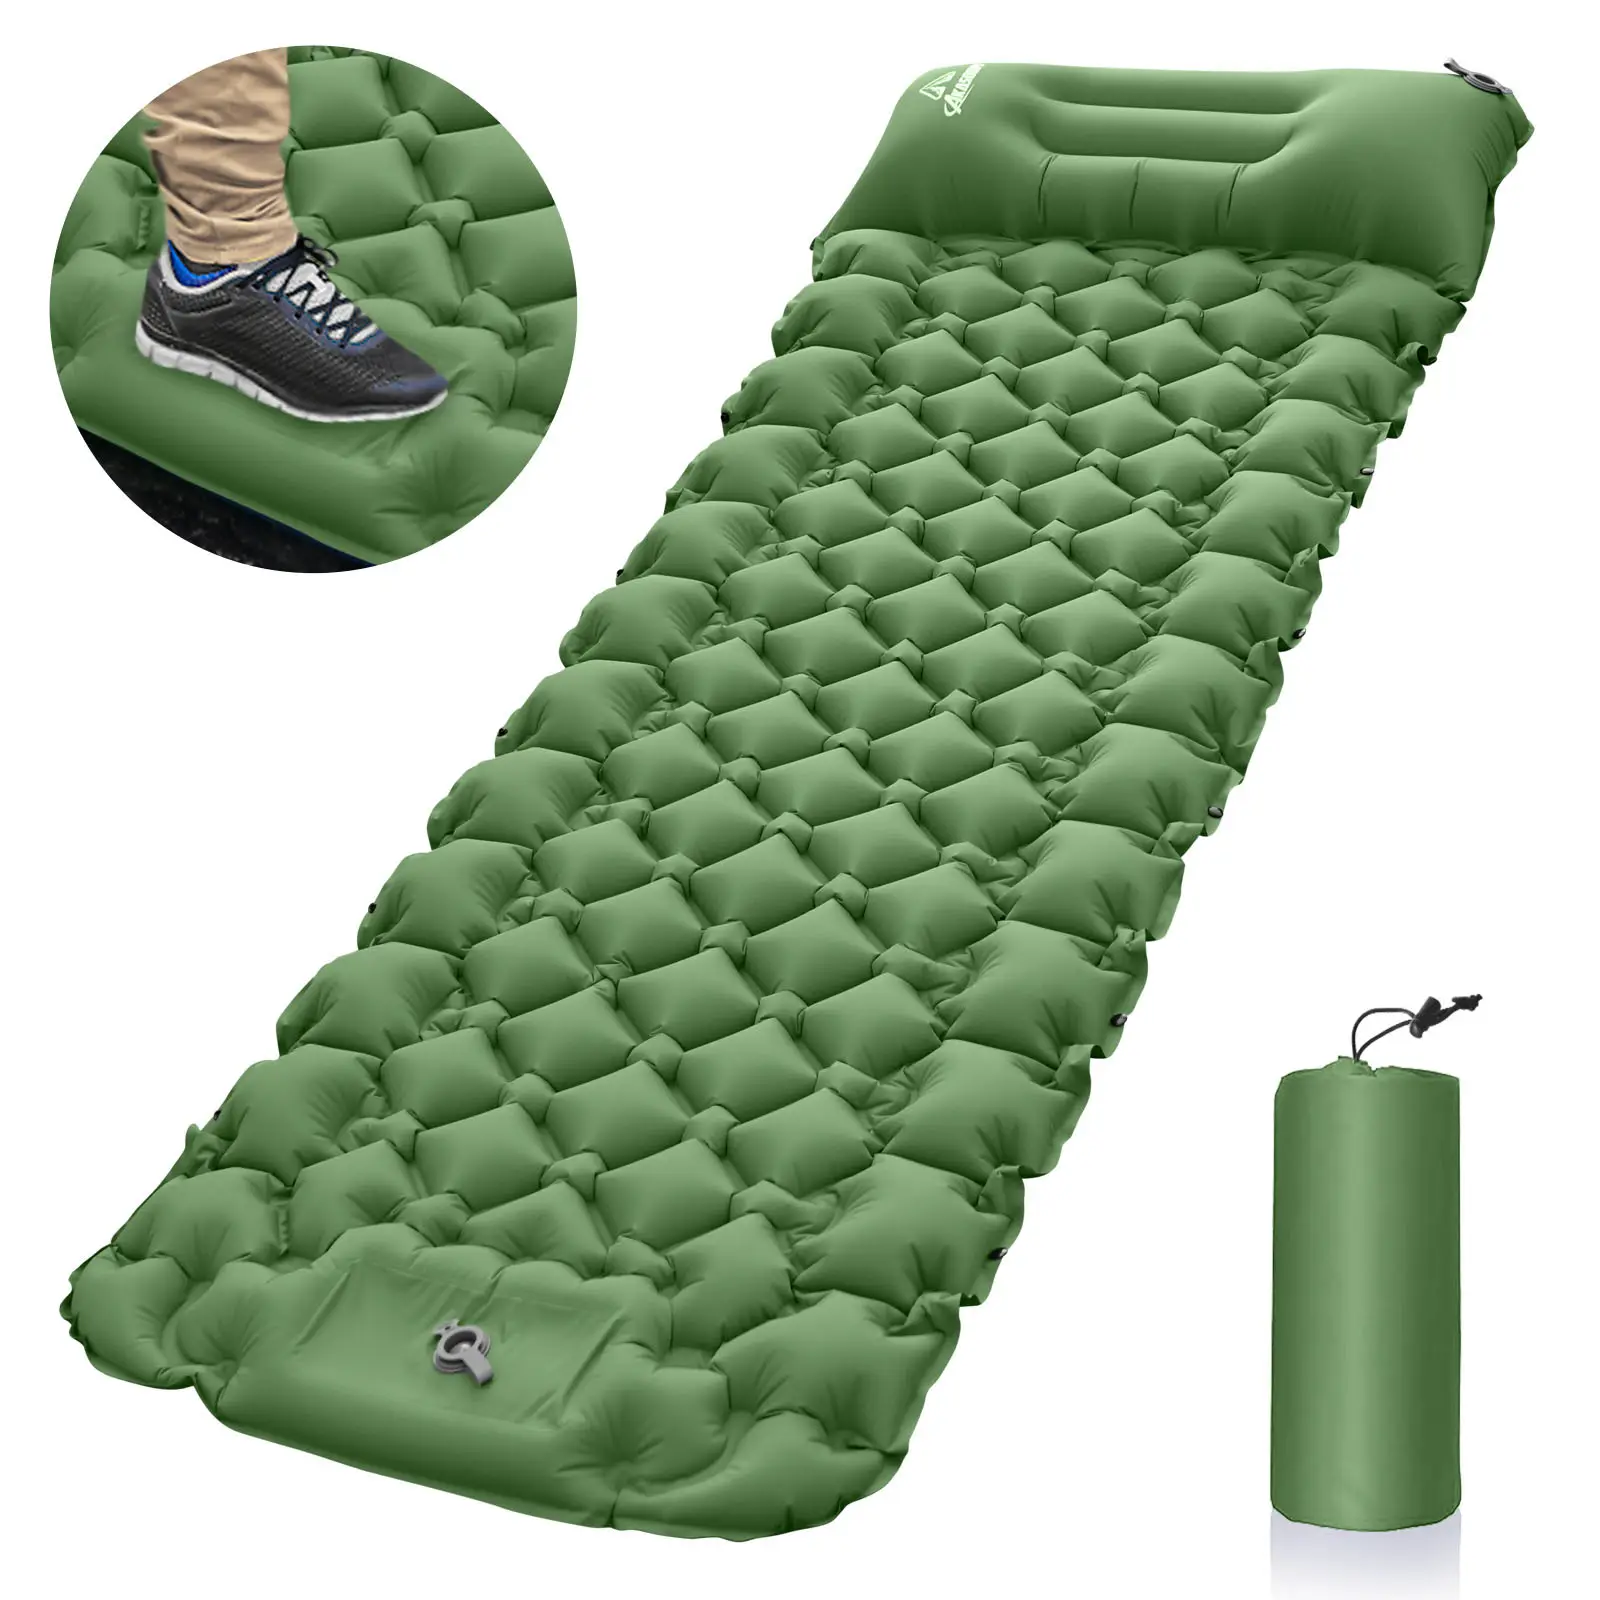 Fábrica quente Ultraleve Camping Mat com Travesseiro Built-in Foot Pump Inflável Sleeping Pads colchão de ar ao ar livre Compacto para Camp